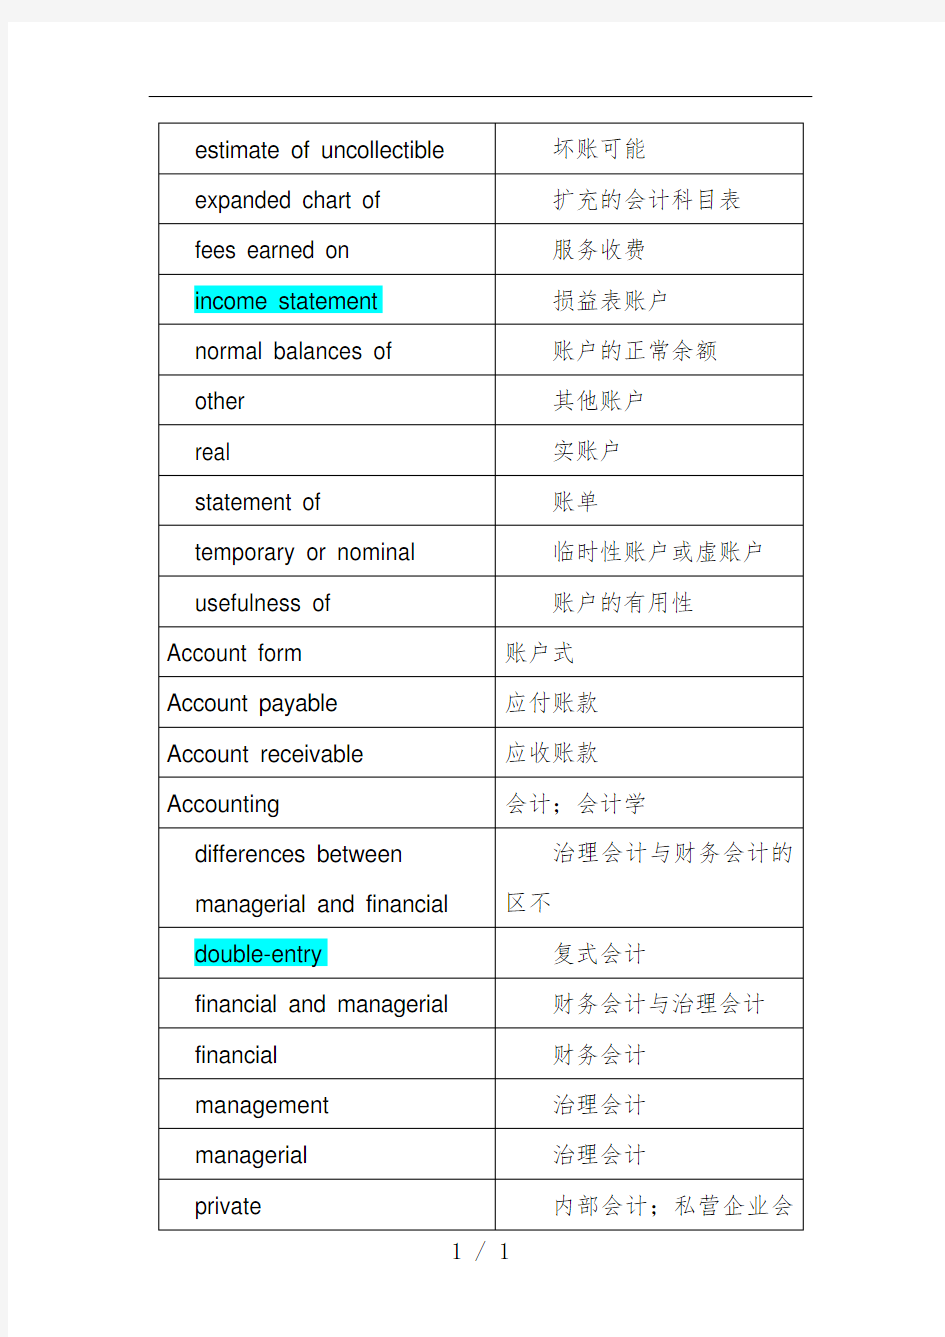 中英文会计词汇对照表